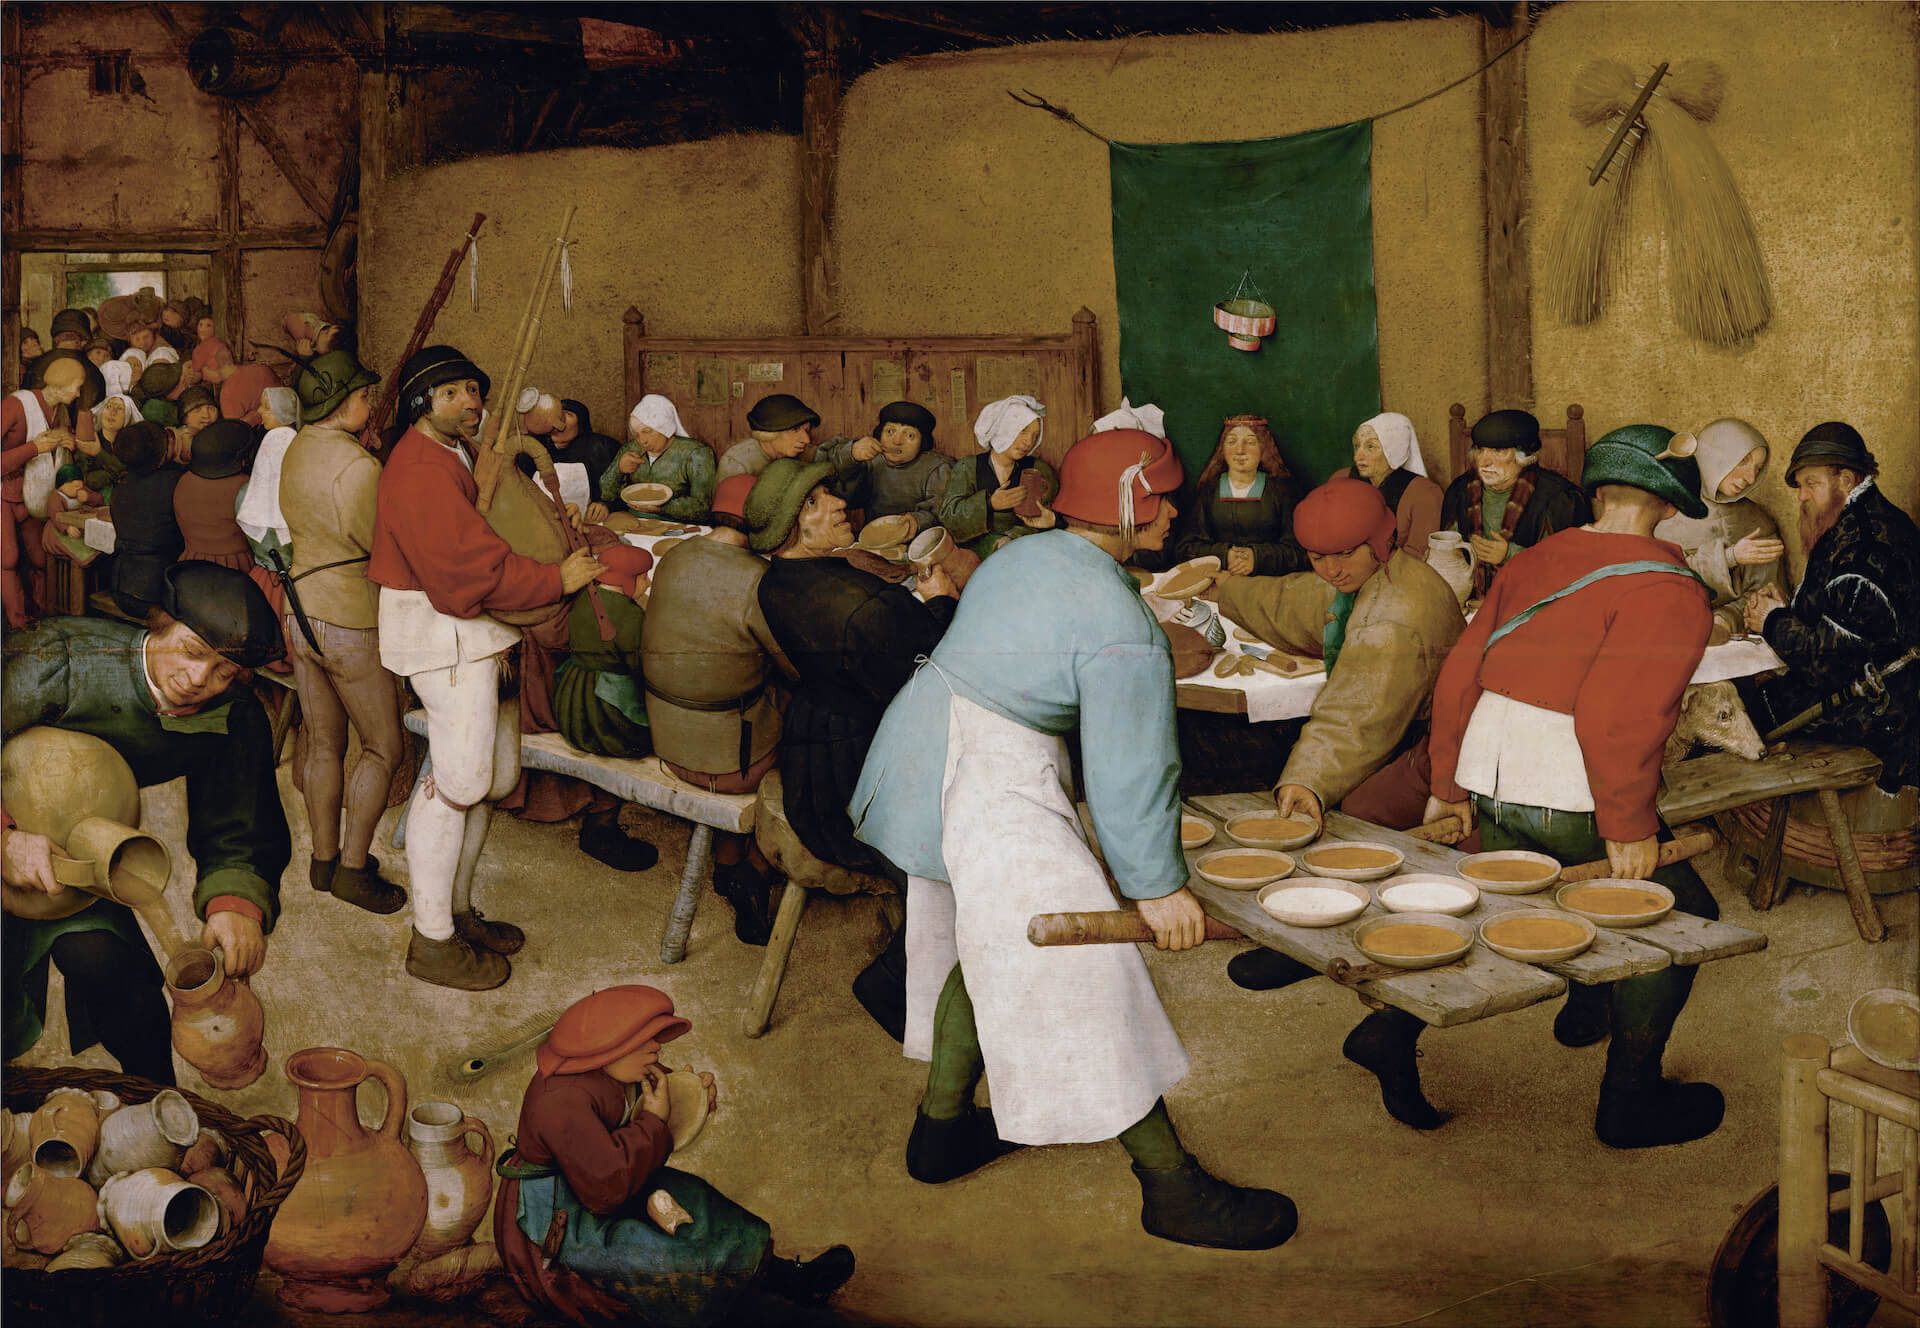 La boda campesina Pieter Brueghel el Viejo Flandes